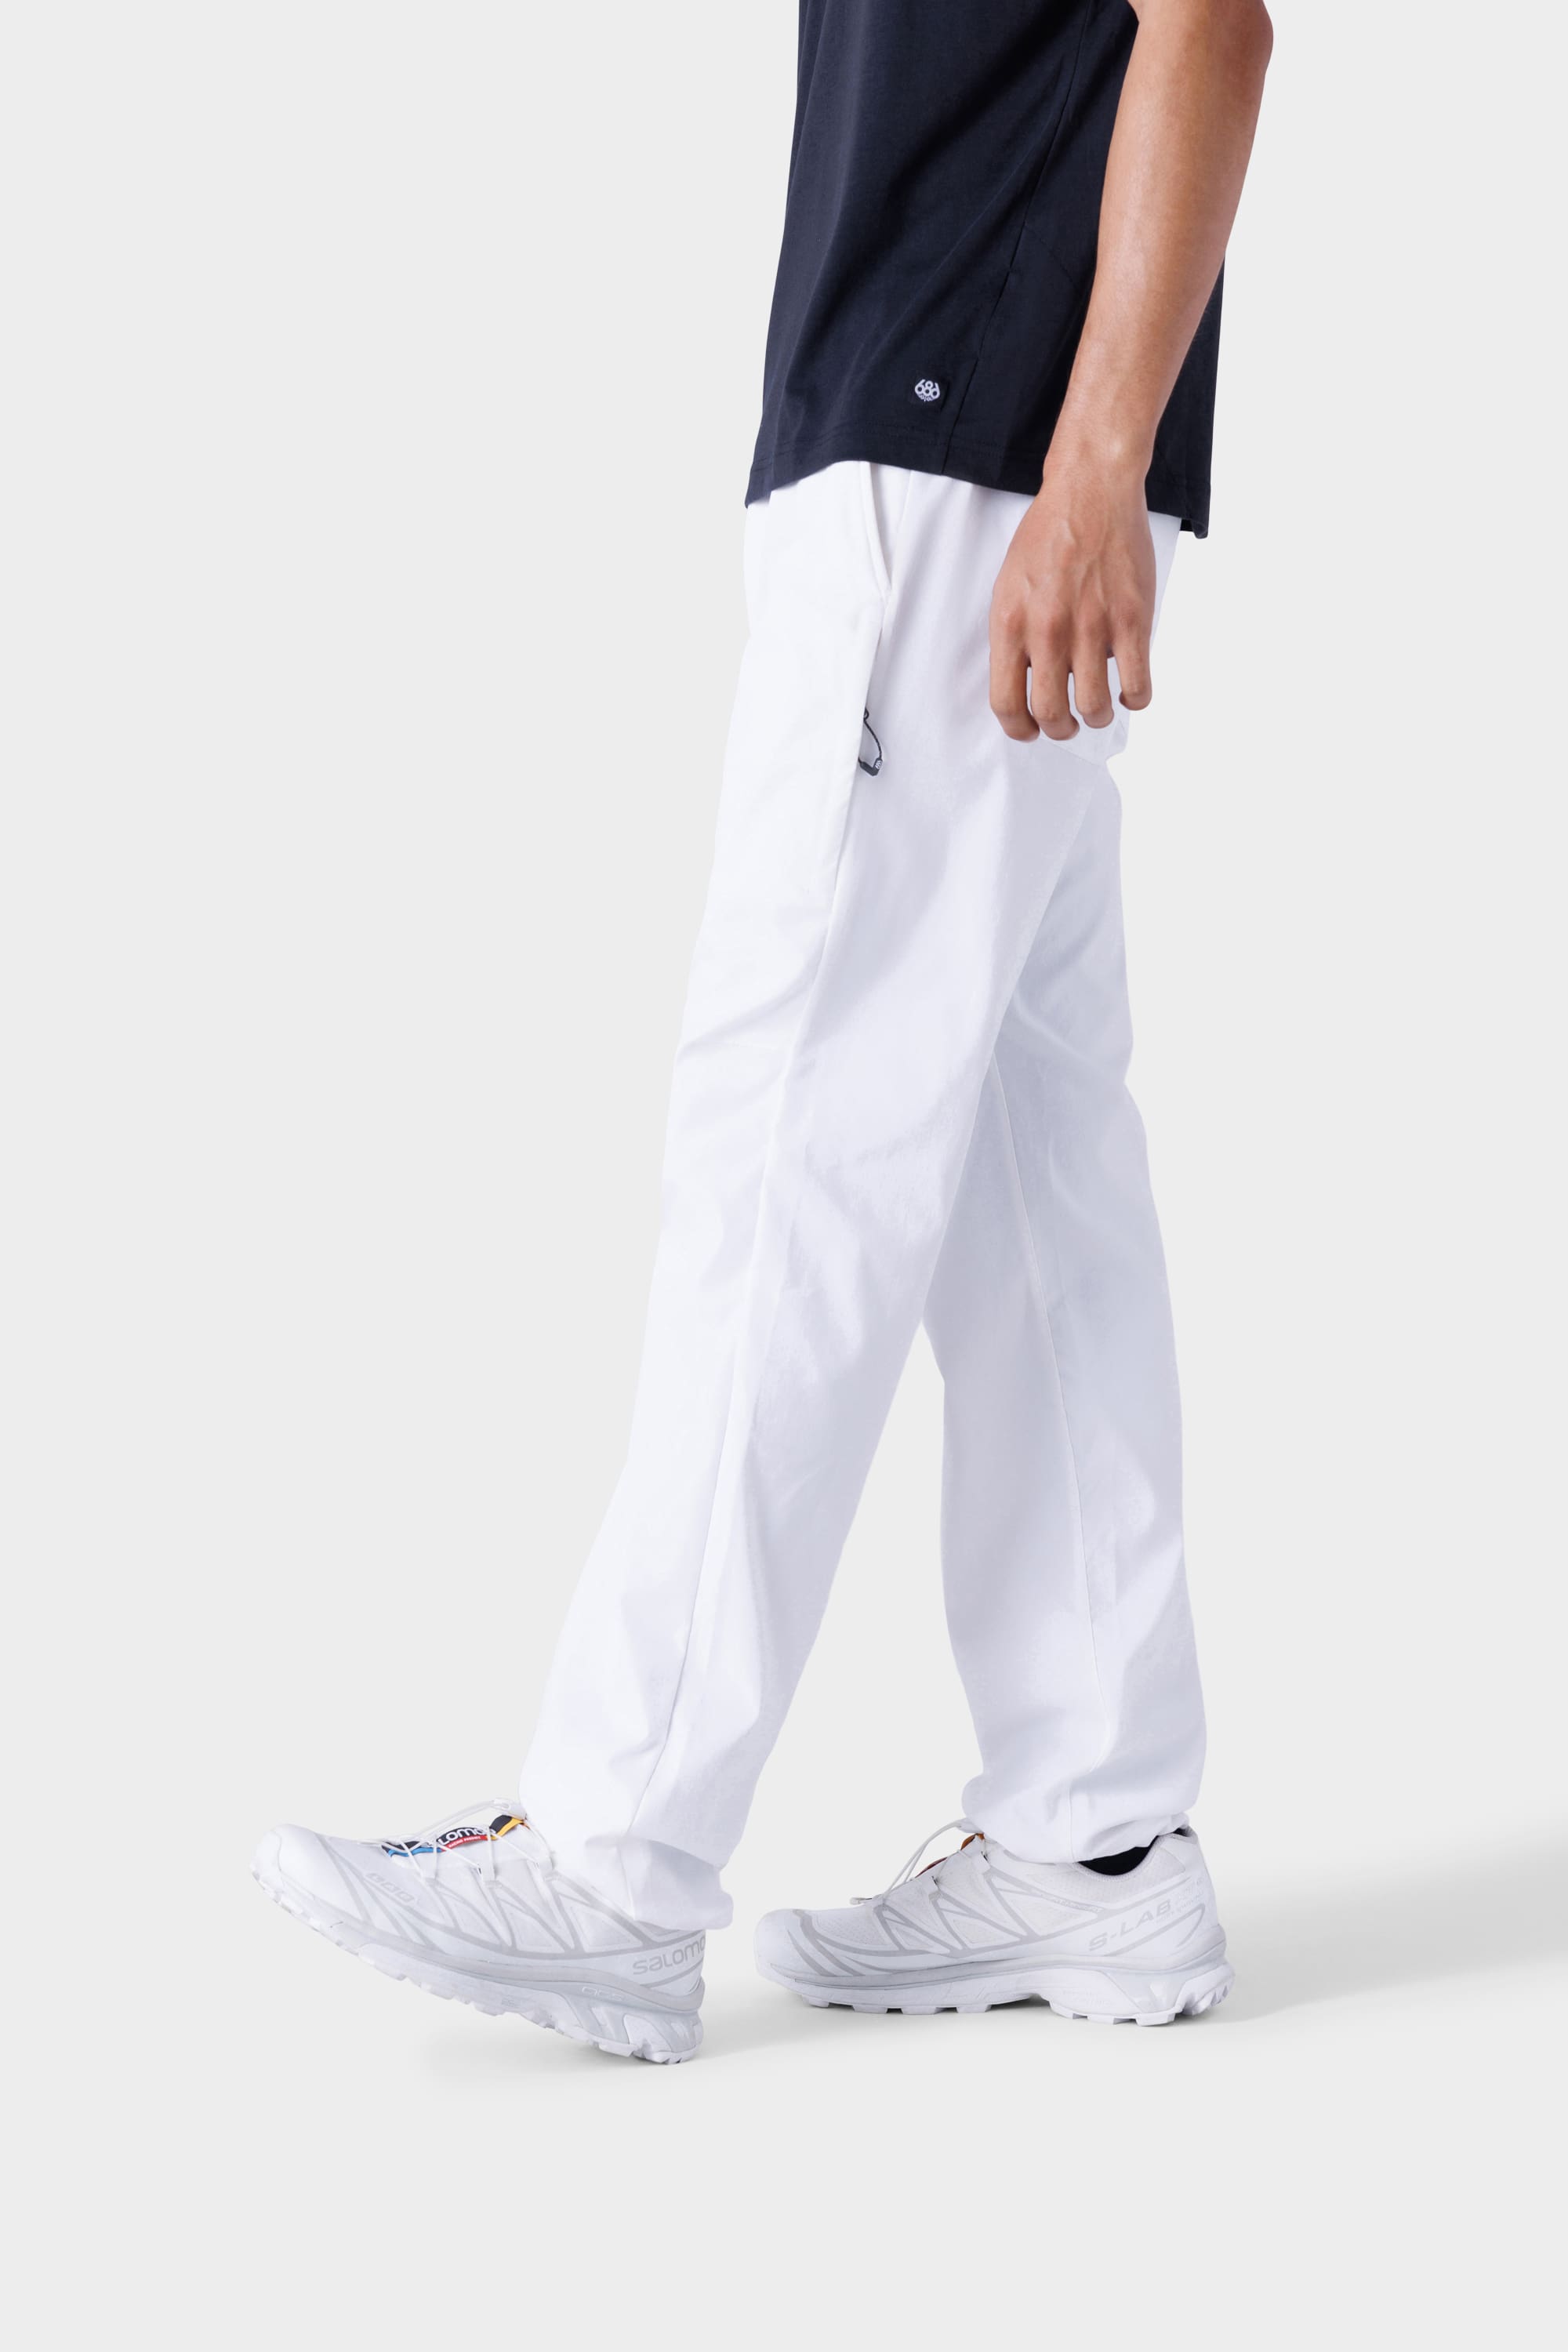 Vibes Men's Cargo Zipper Pocket Sweatpants Adjustable Bungee Cord